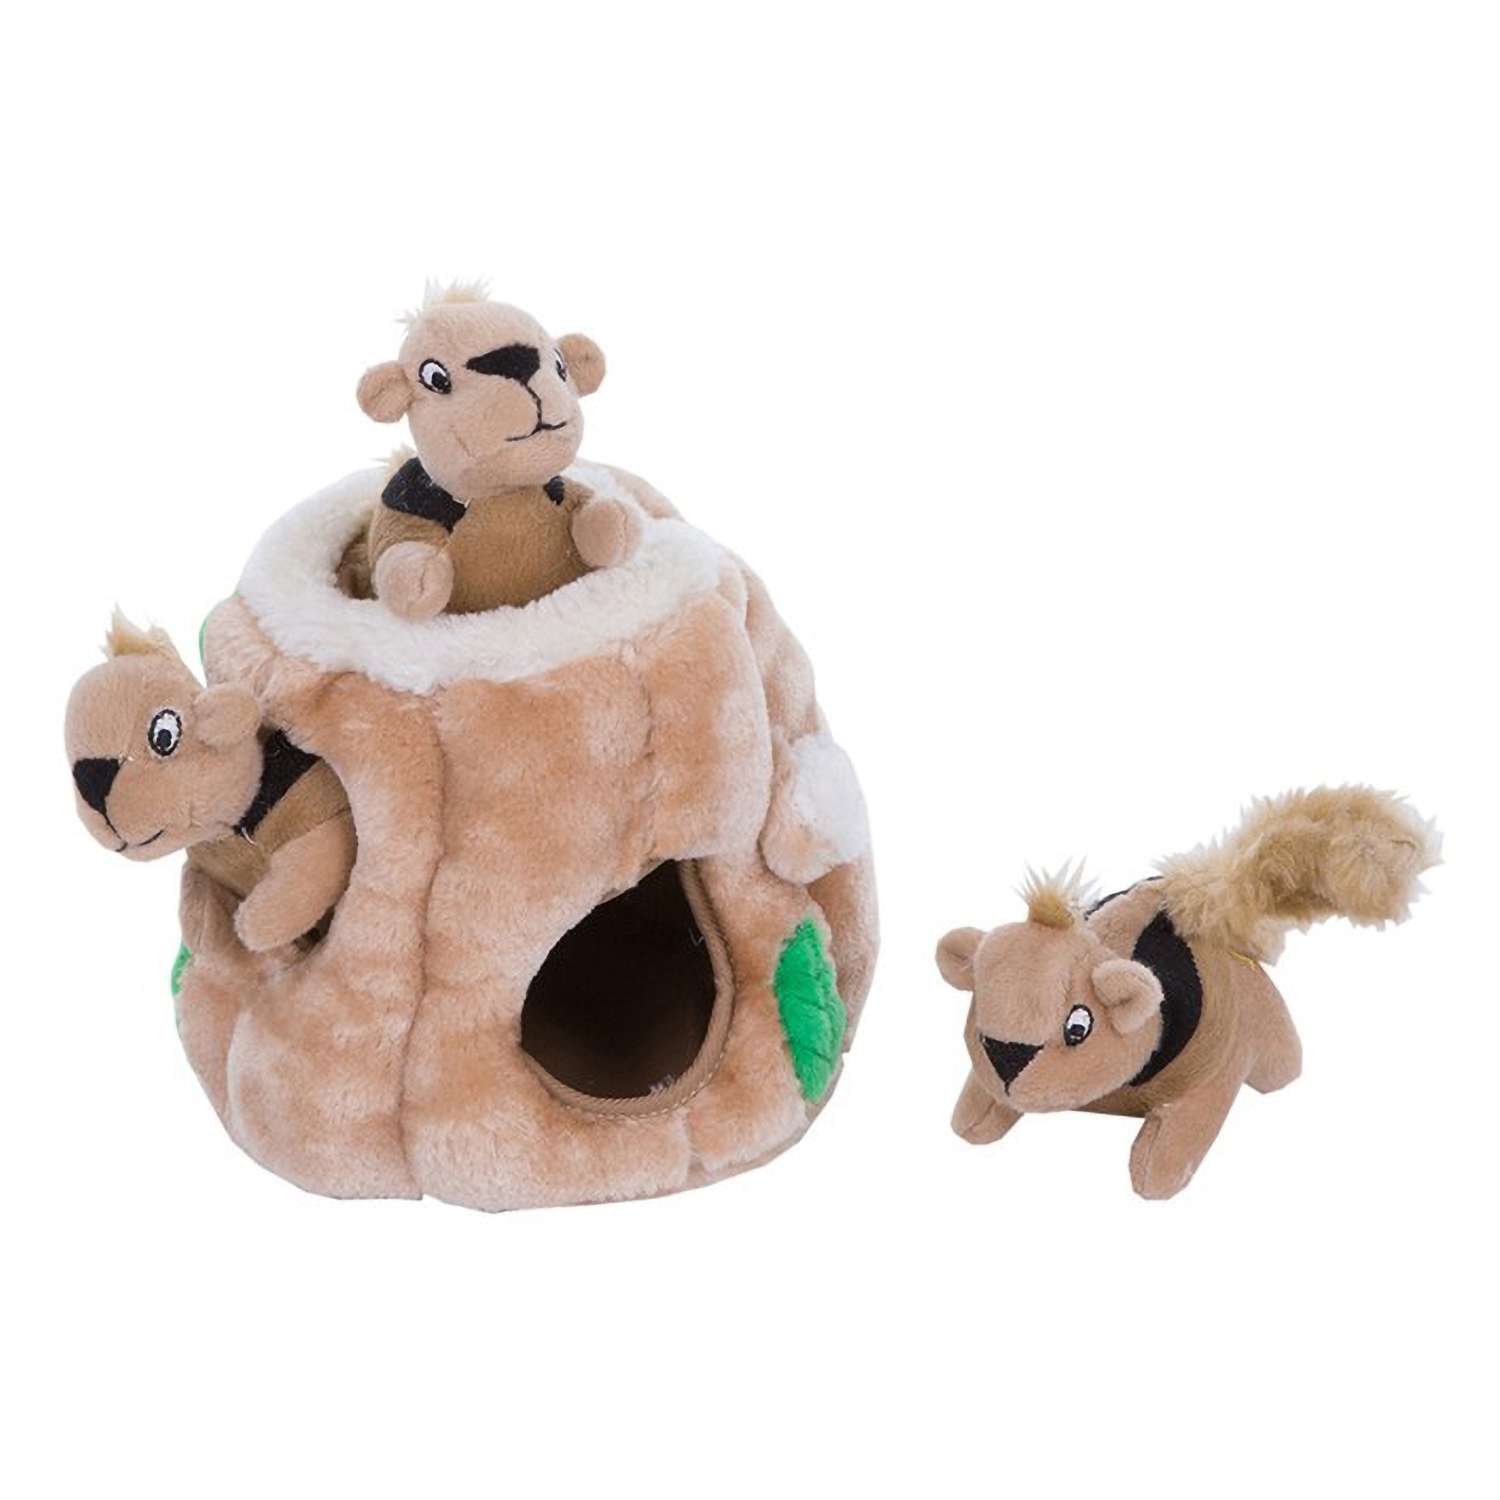 Игрушка-головоломка OutwardHound Hide-A-Squirrel (спрячь белку) малая, для собак, 12 см